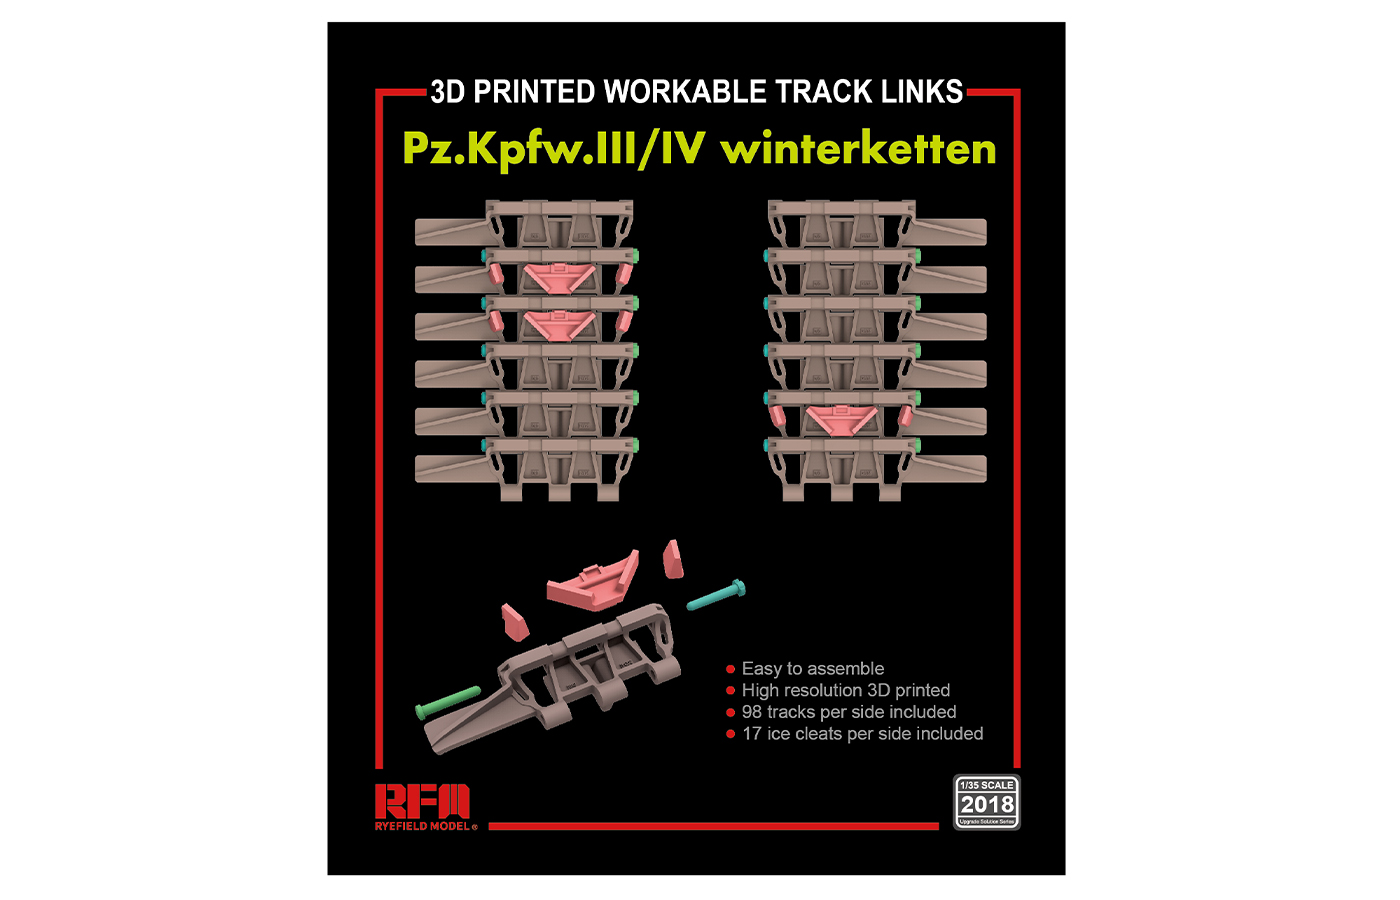 RM-2018 Pz.Kpfw.III/IV winterketten